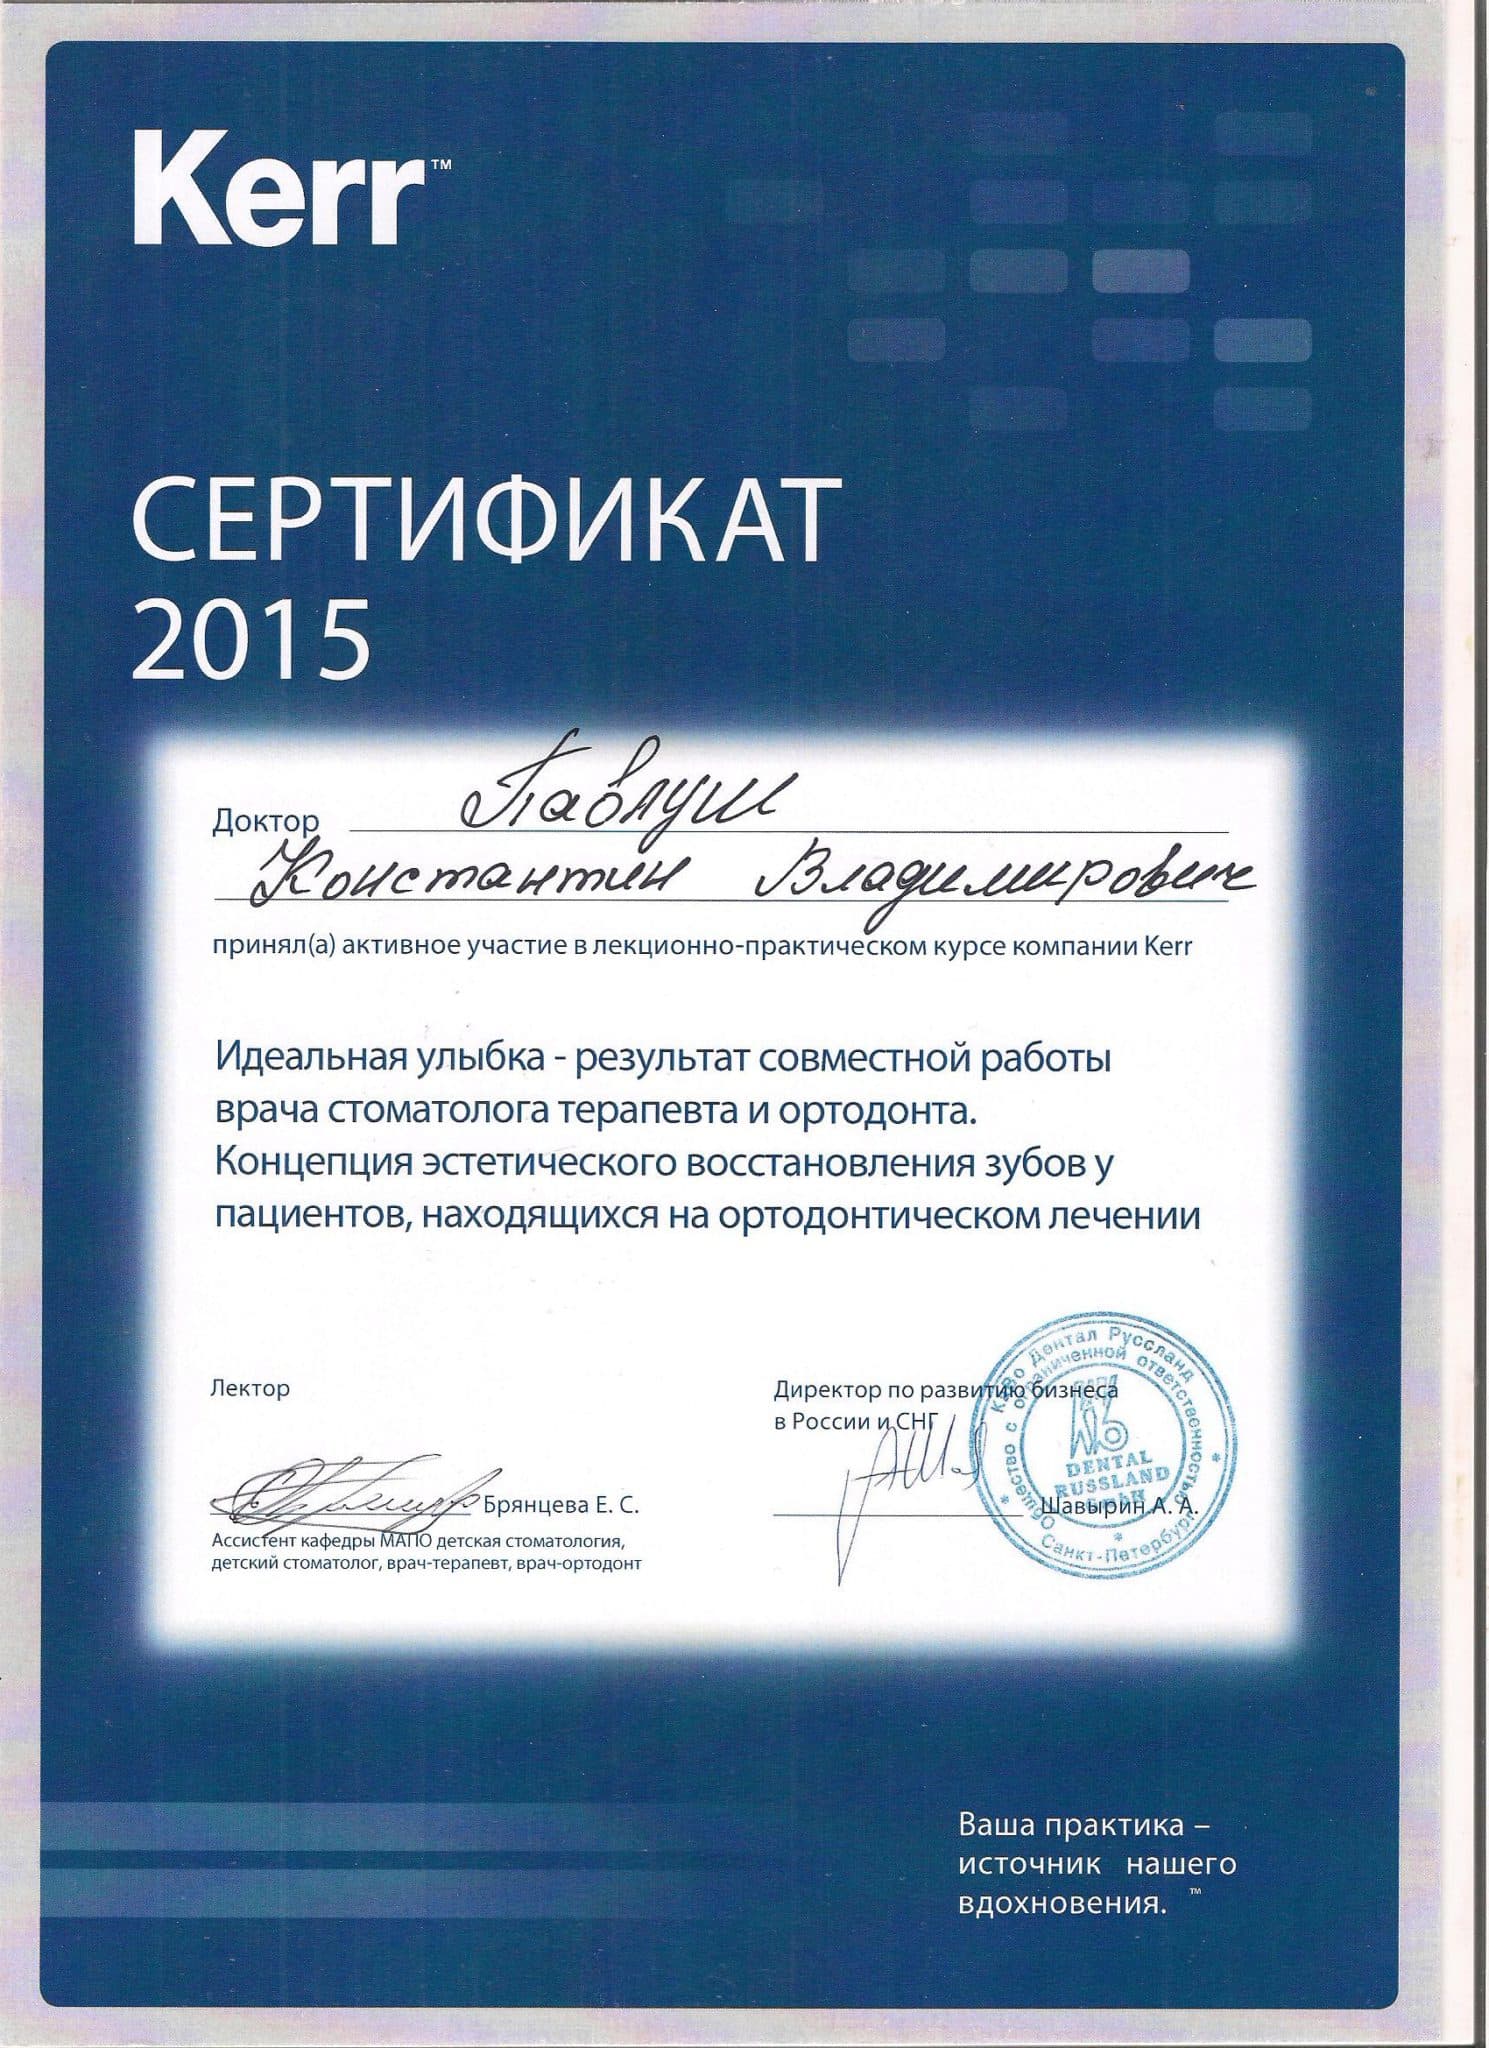 Сертификат о прохождении курсов в компании "Kerr"